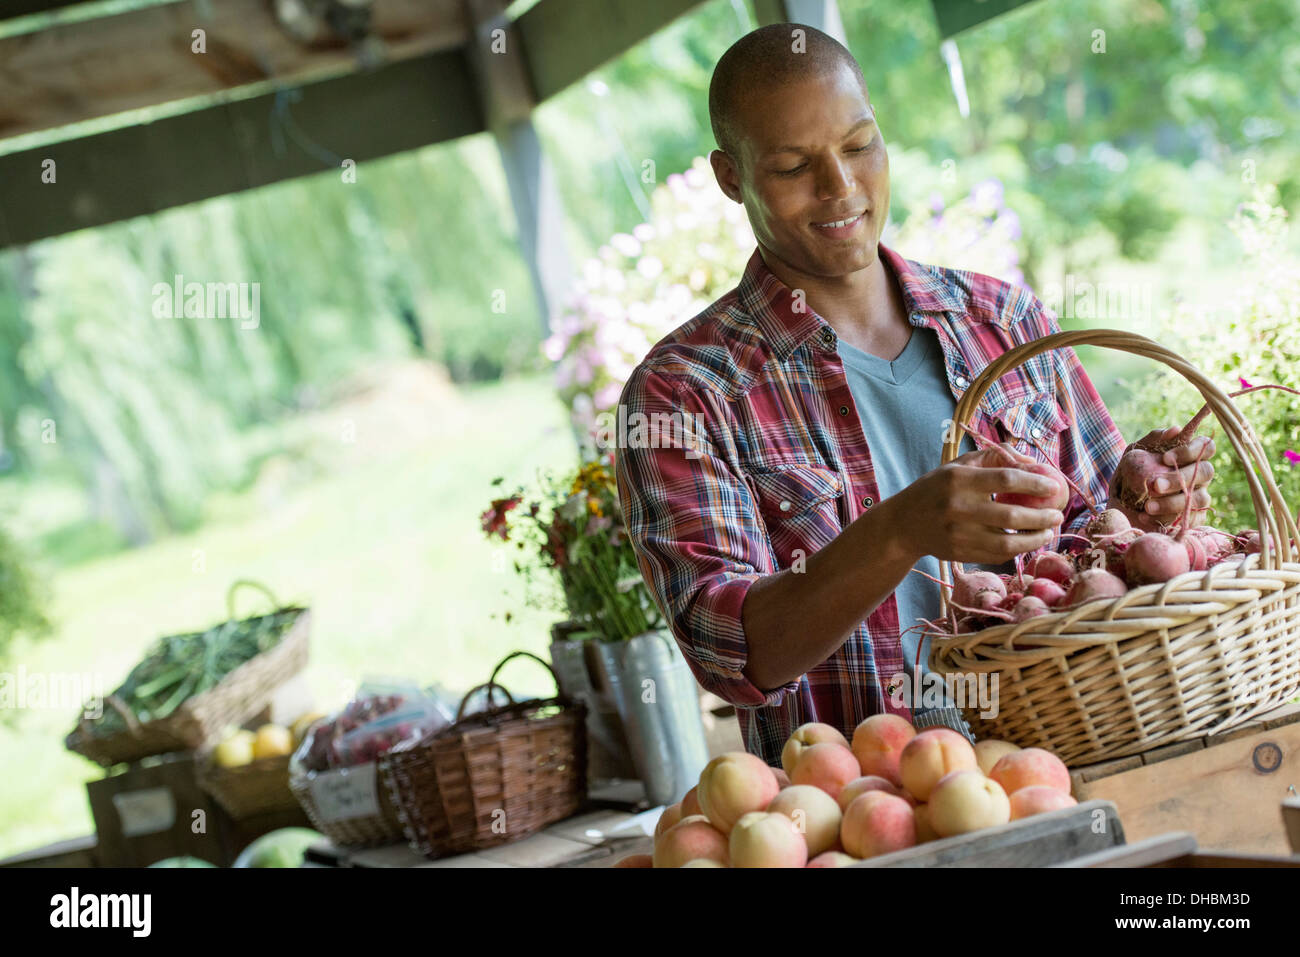 Une ferme stand avec des légumes et fruits biologiques. Un homme de betterave de tri dans un panier. Banque D'Images